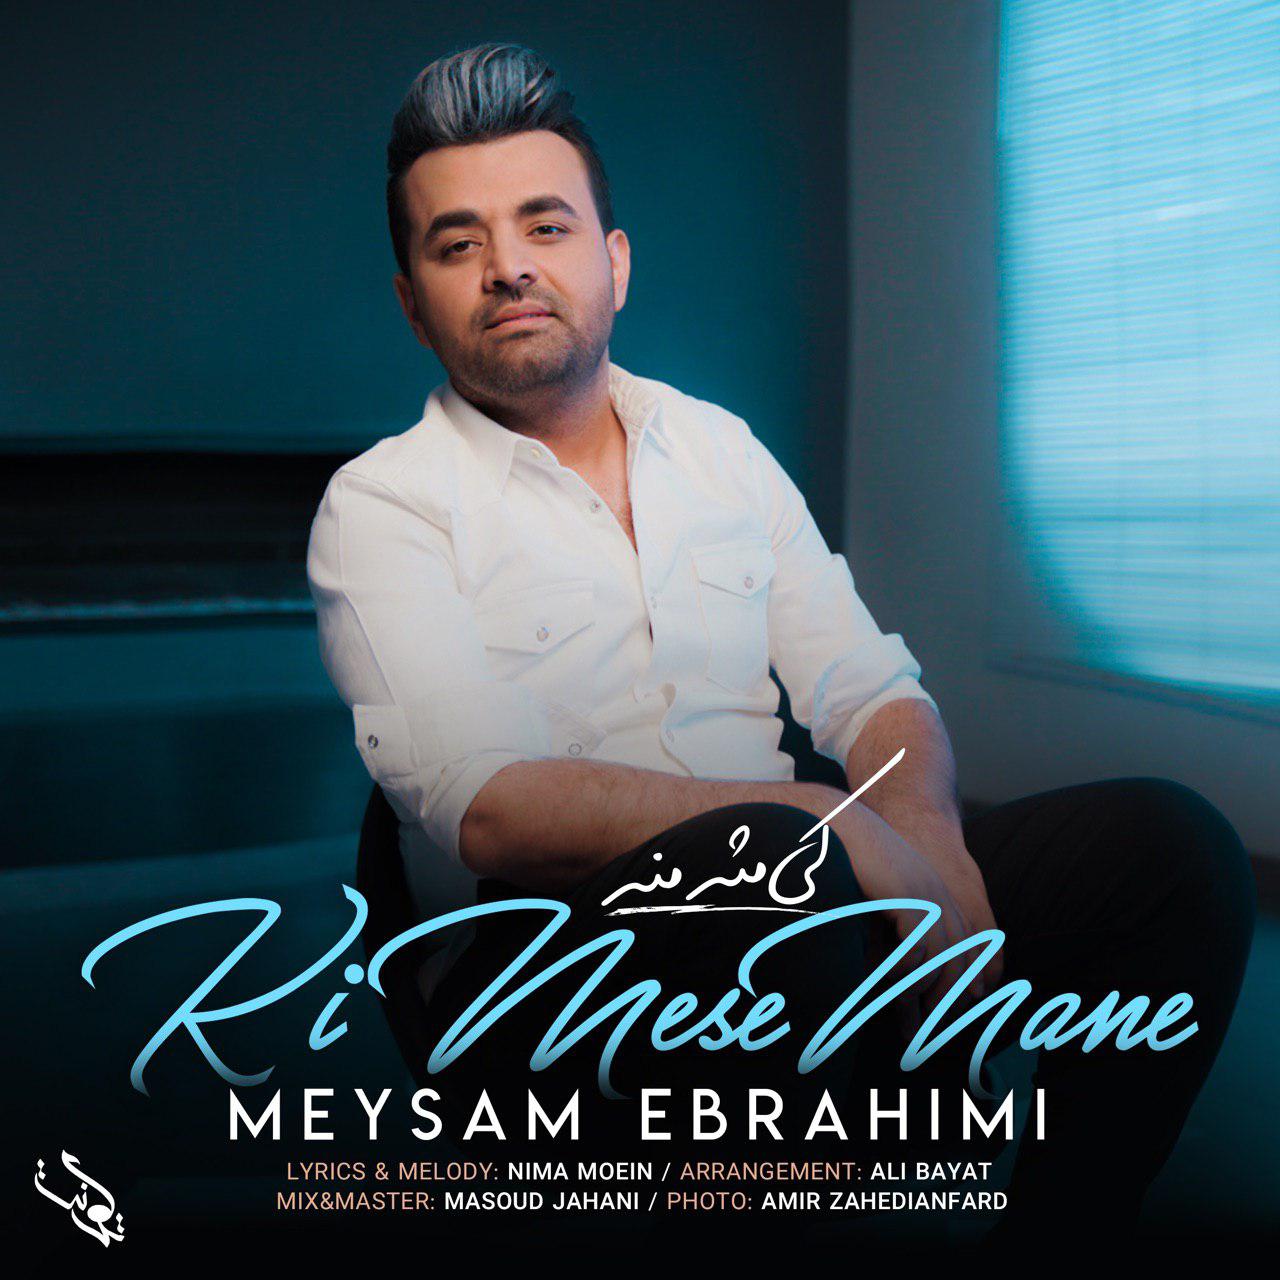 اهنگ کی مث منه میثم ابراهیمی | Meysam Ebrahimi Ki Mese Mane